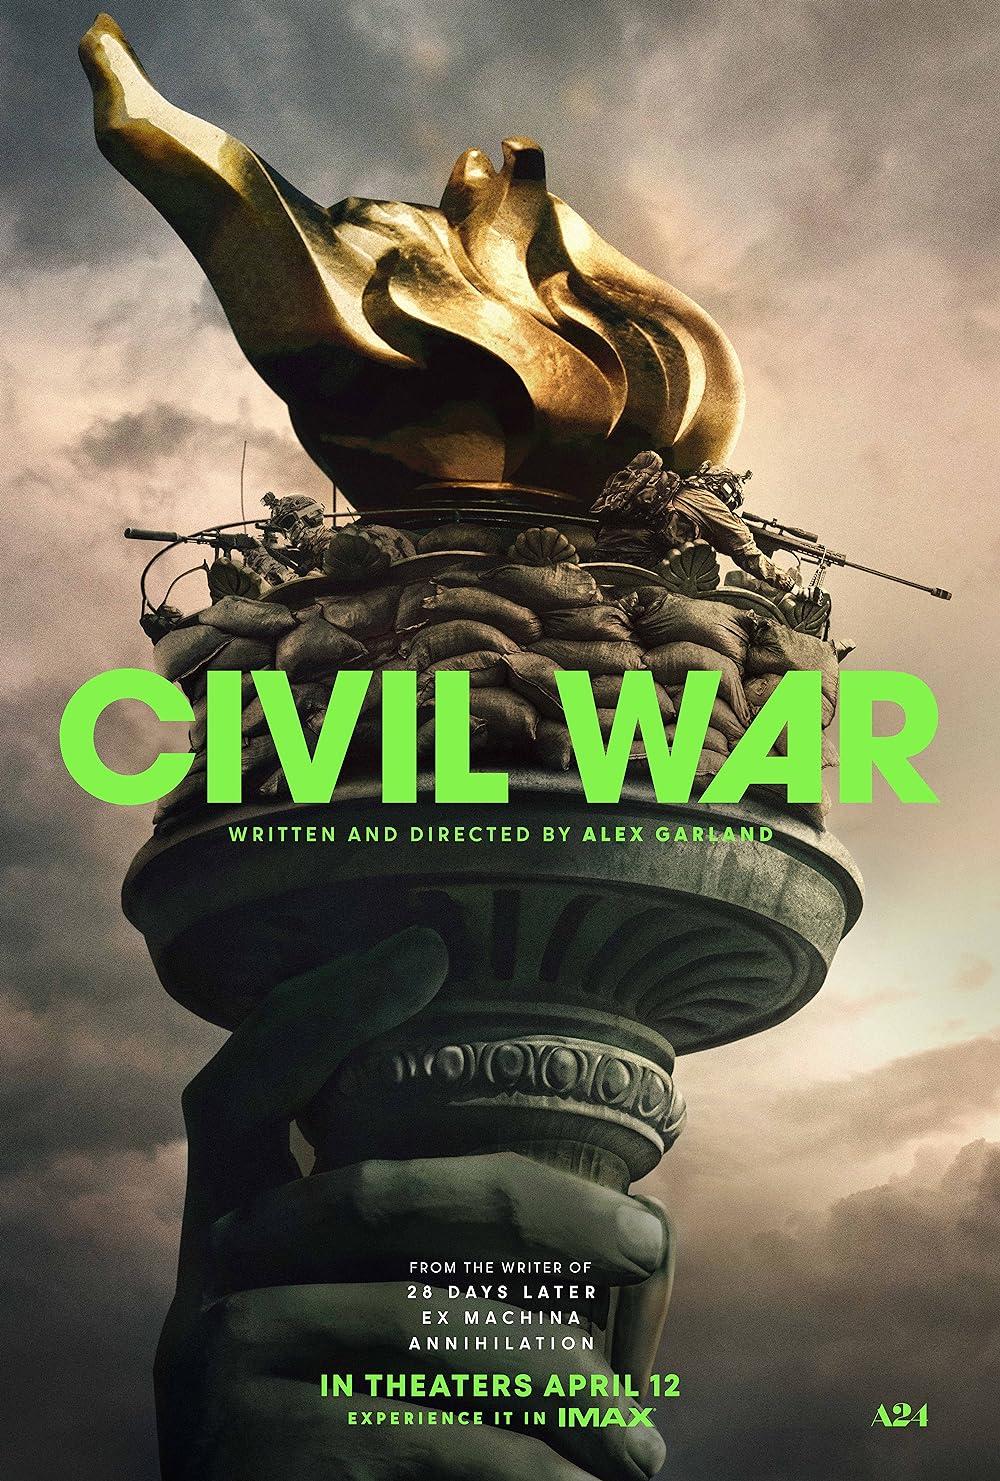 Civil War | Review